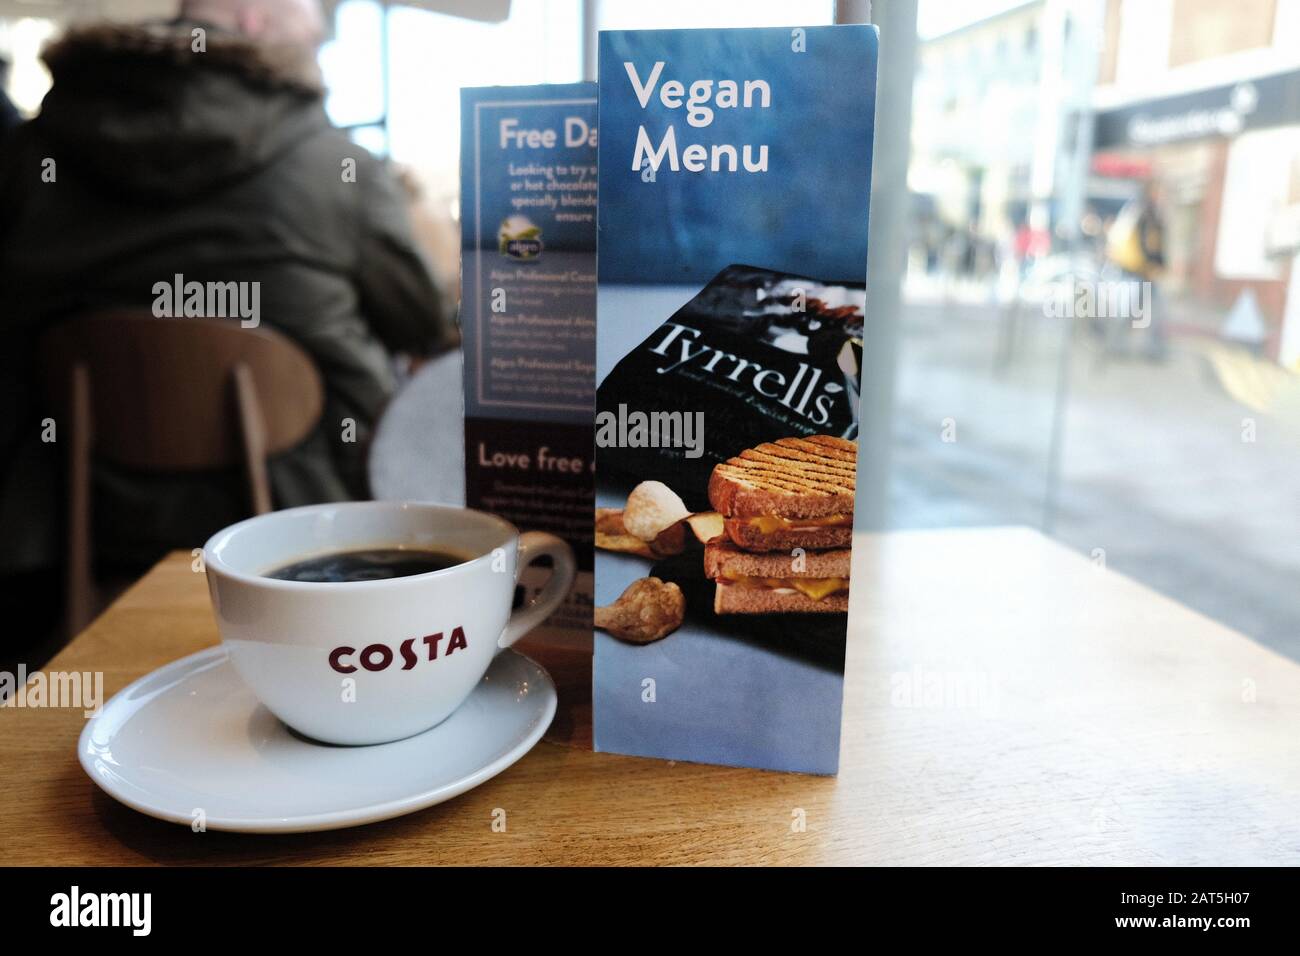 Una carta del menu vegano su un tavolo in una caffetteria Costa su un High St. La catena offre una gamma di prodotti sostitutivi del latte, spuntini e zuppe per soddisfare i Vegani Foto Stock